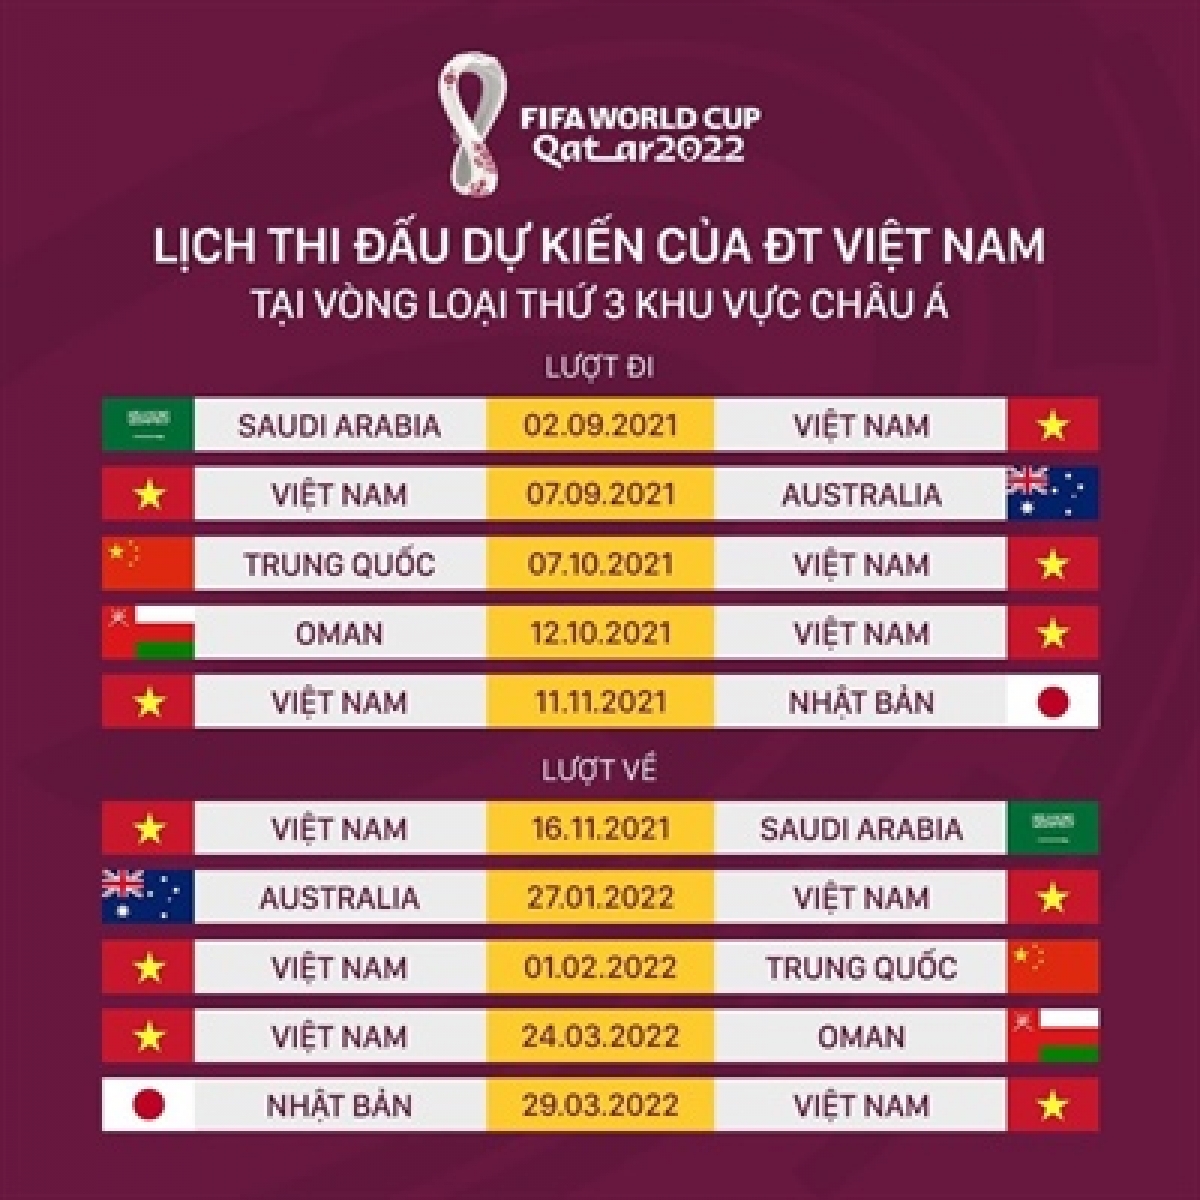 Lịch thi đấu của đội tuyển Việt Nam tại vòng loại thứ 3 khu vực châu Á 